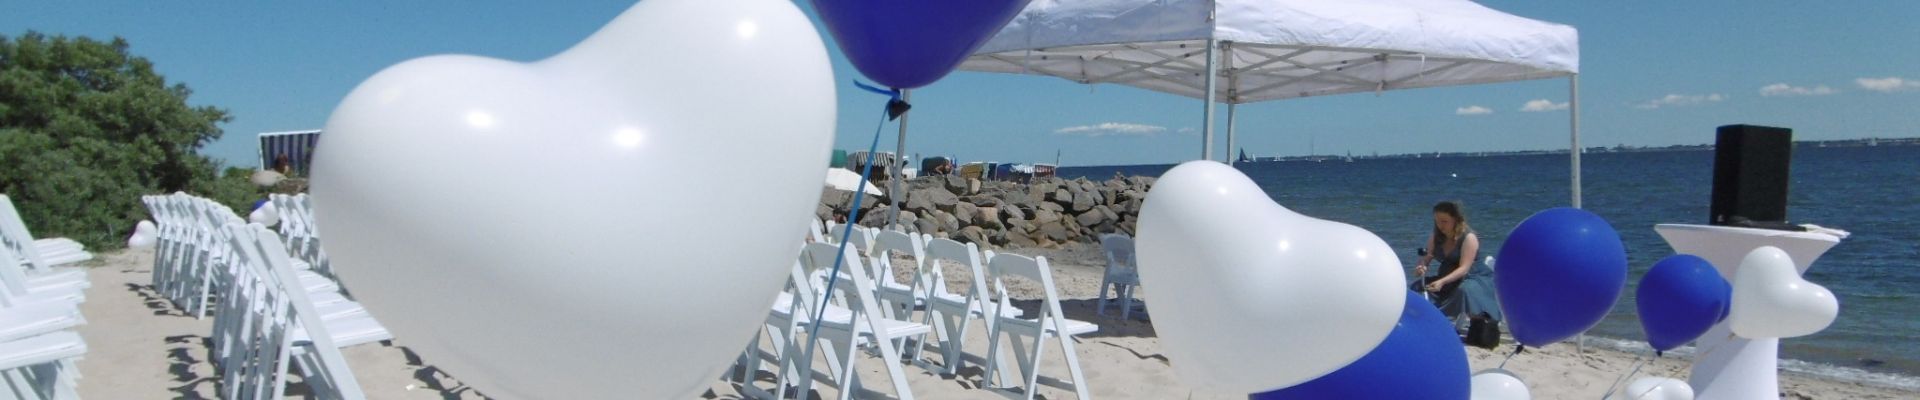 Strandhochzeit Luftballons